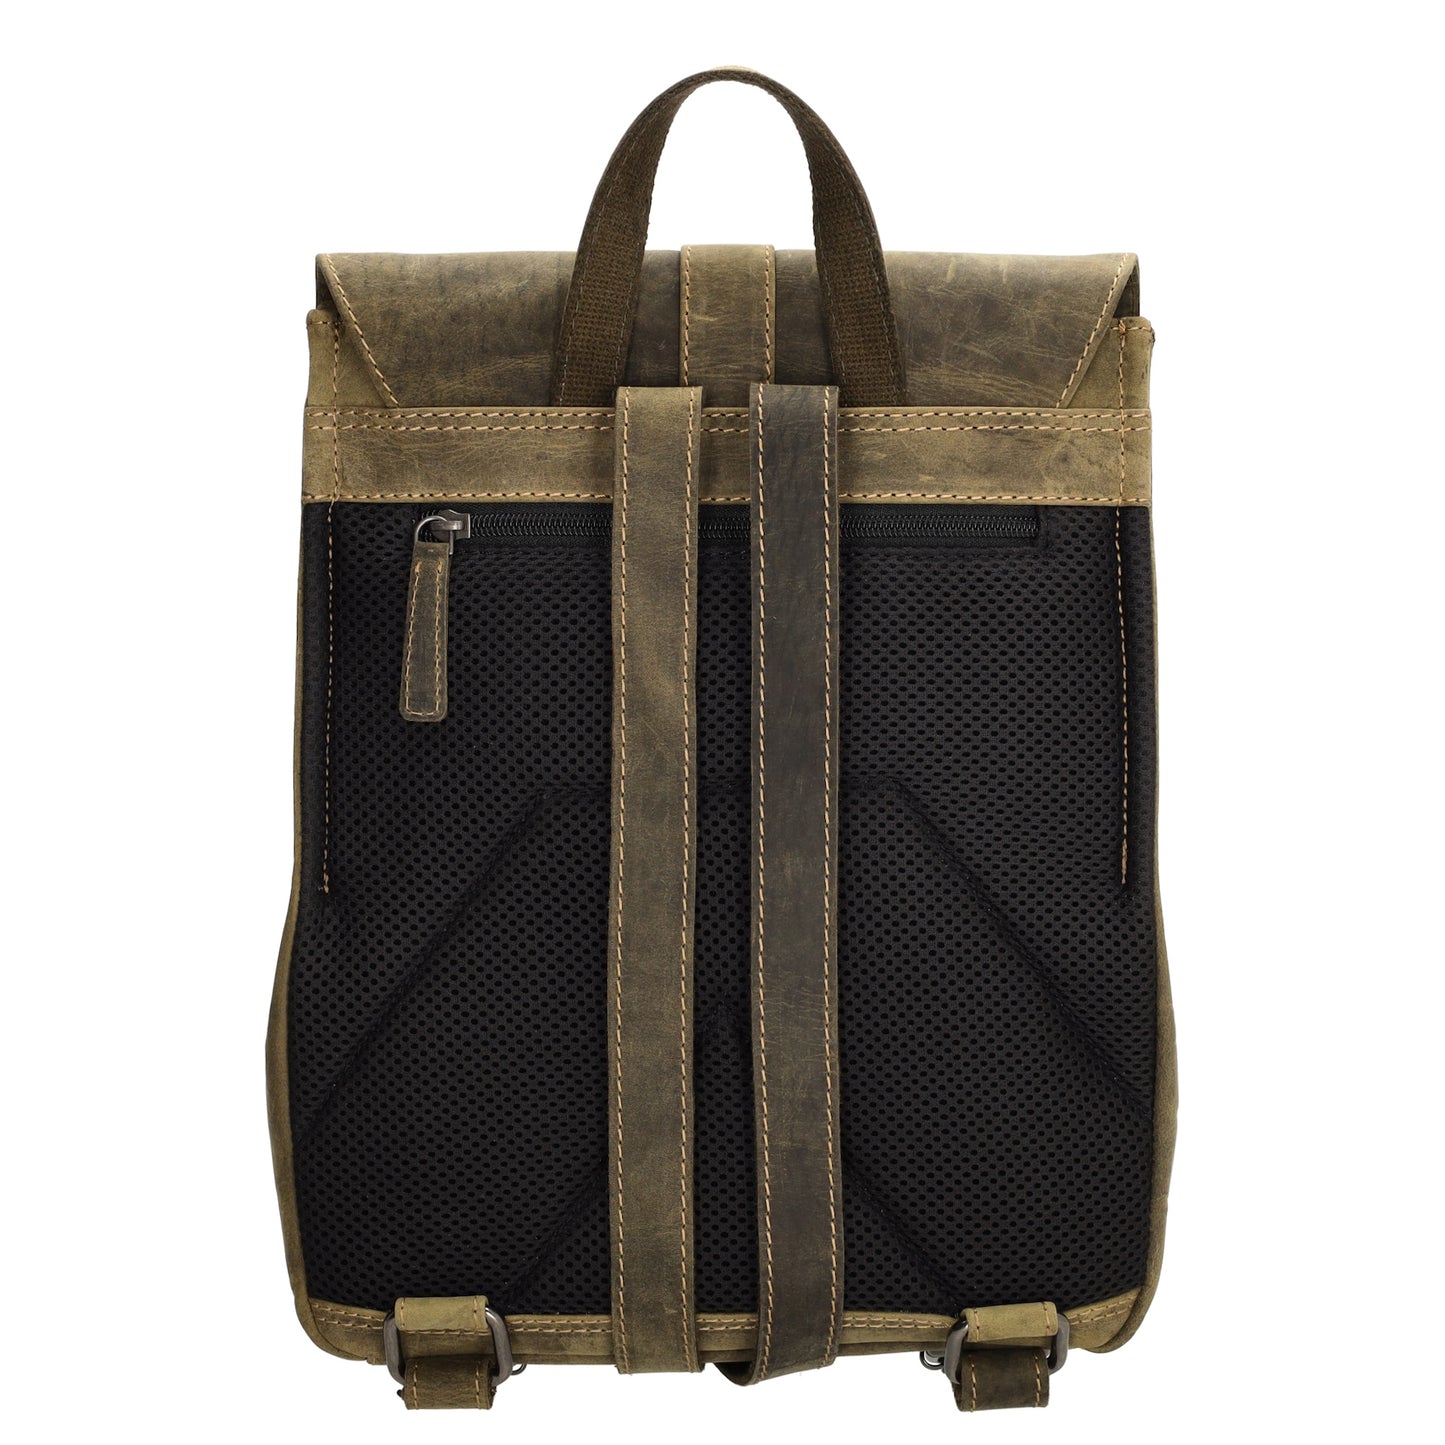 Rucksack 25,5x 23,5cm in Oliv mit Überschlag und Magnetverschluss aus Leder